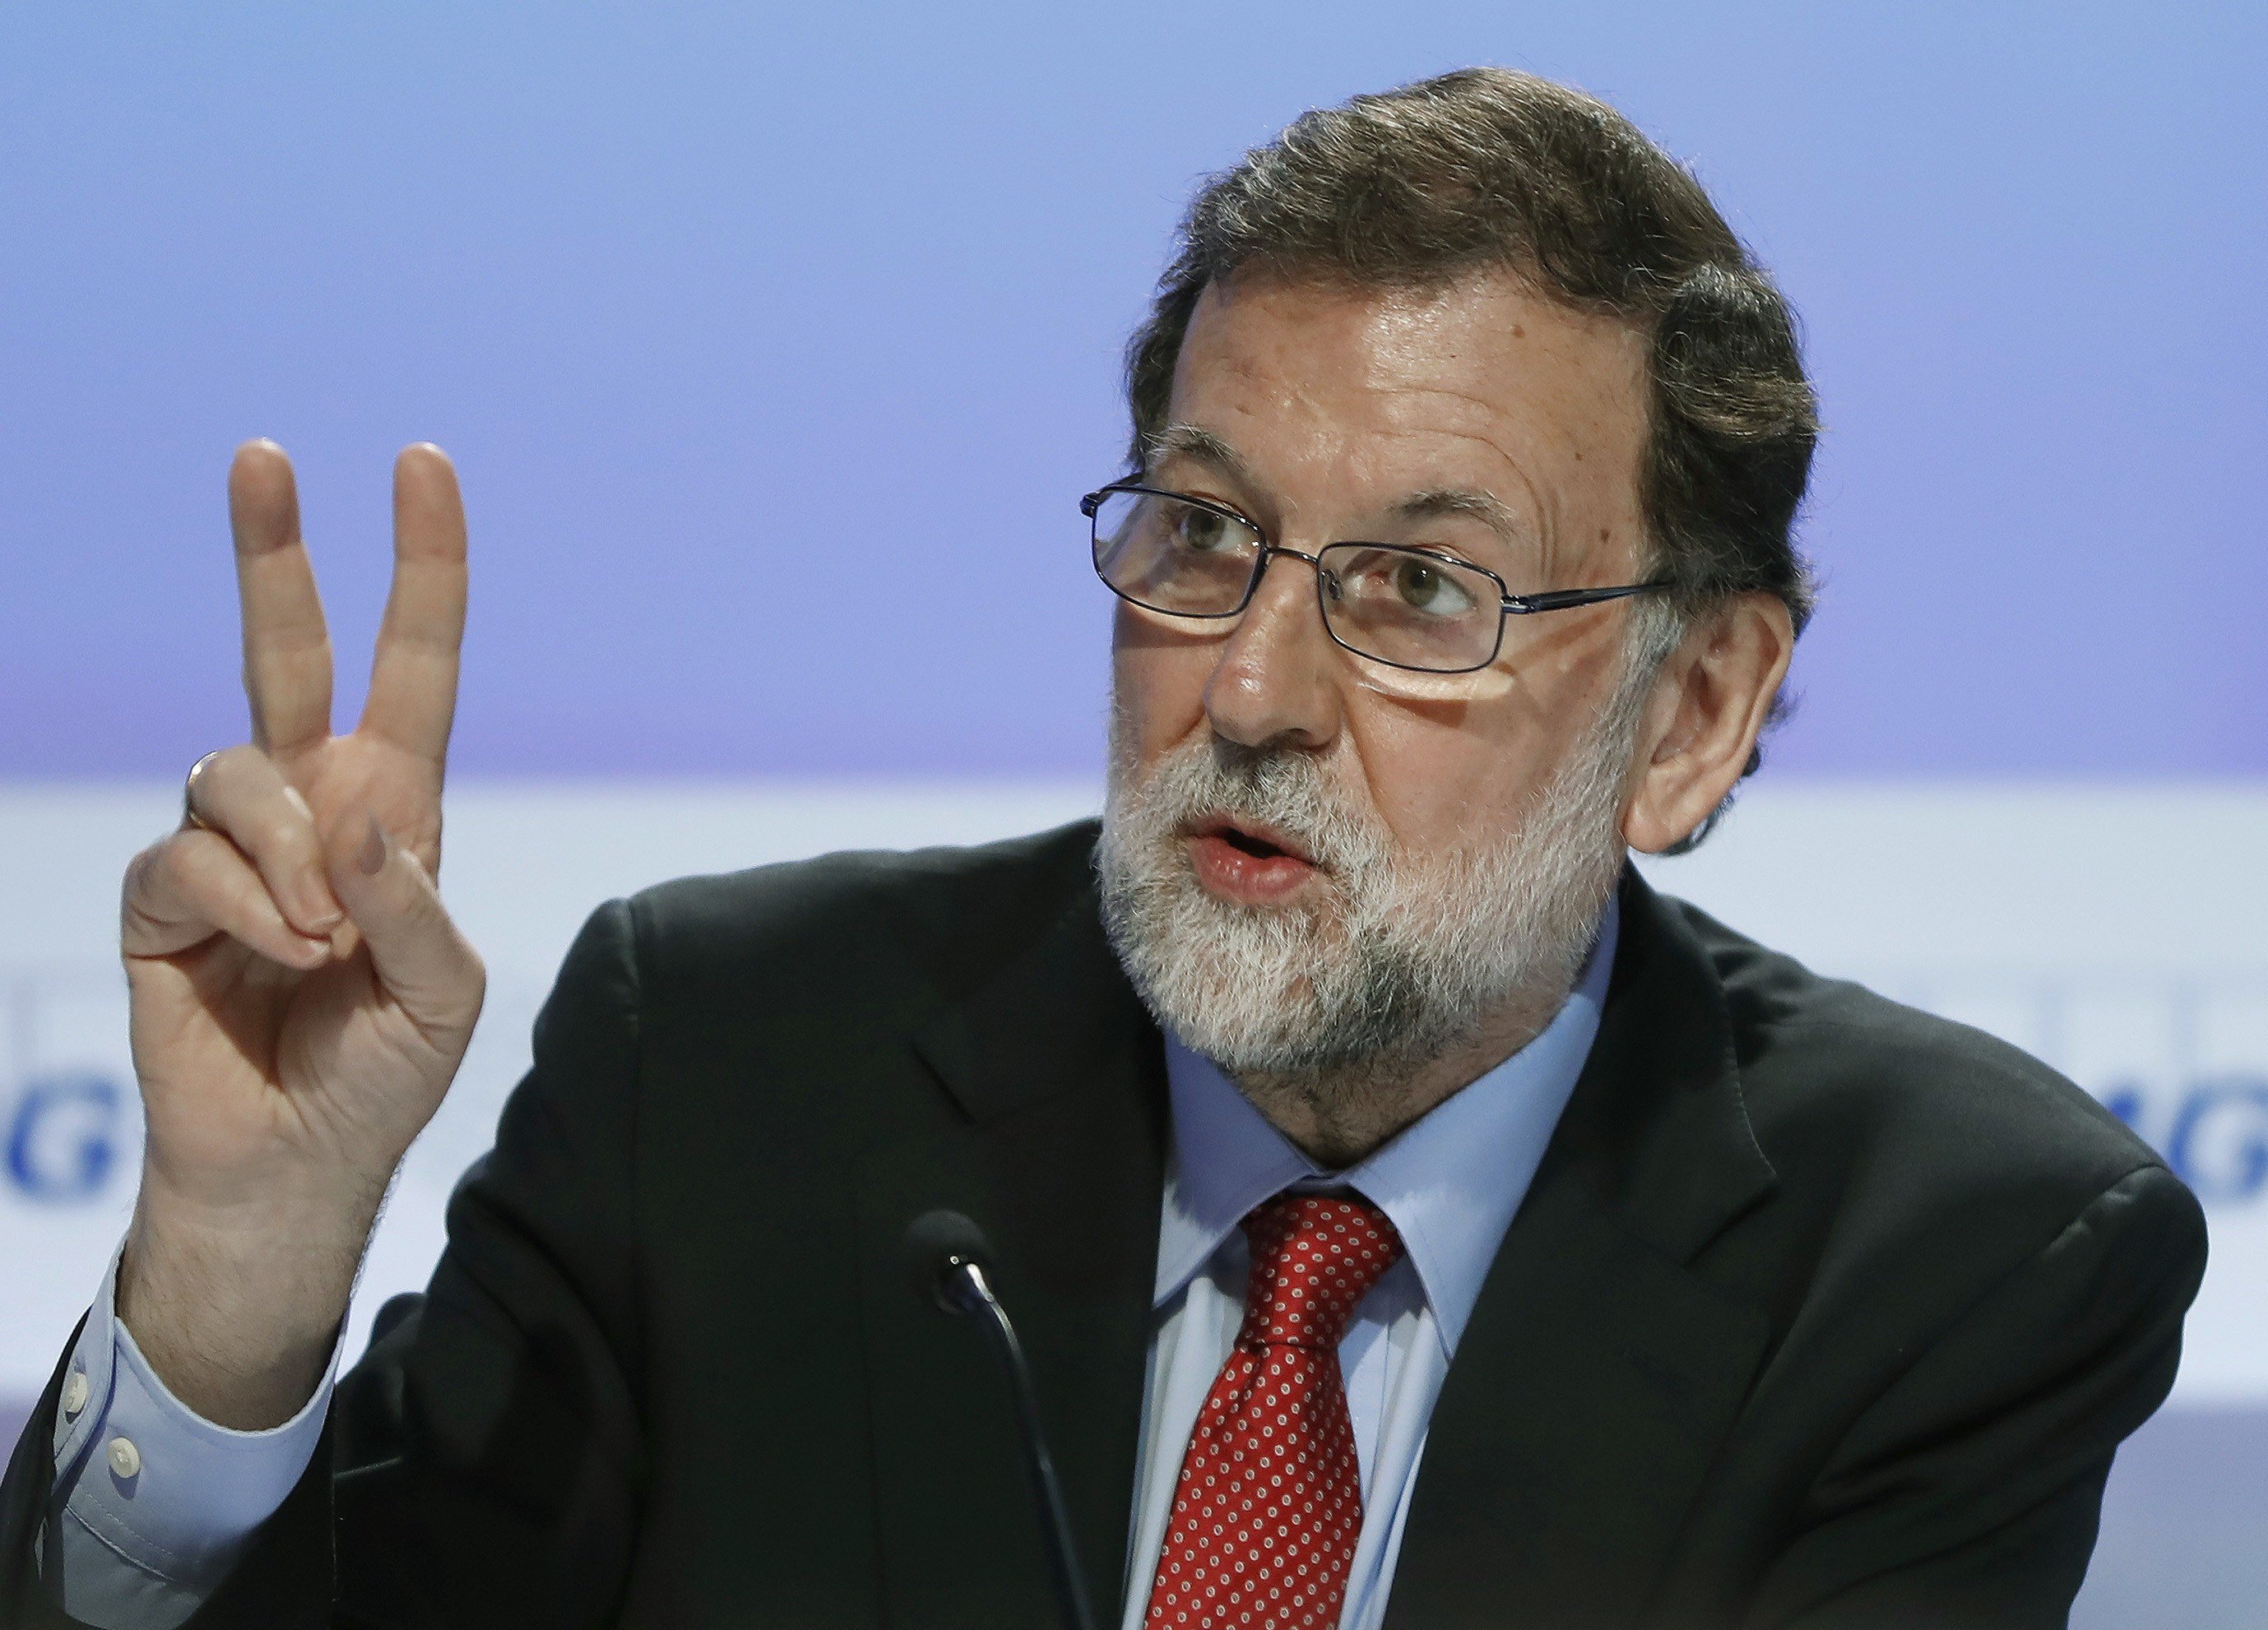 Repulsa generalitzada a Espanya a com Rajoy gestiona la crisi amb Catalunya